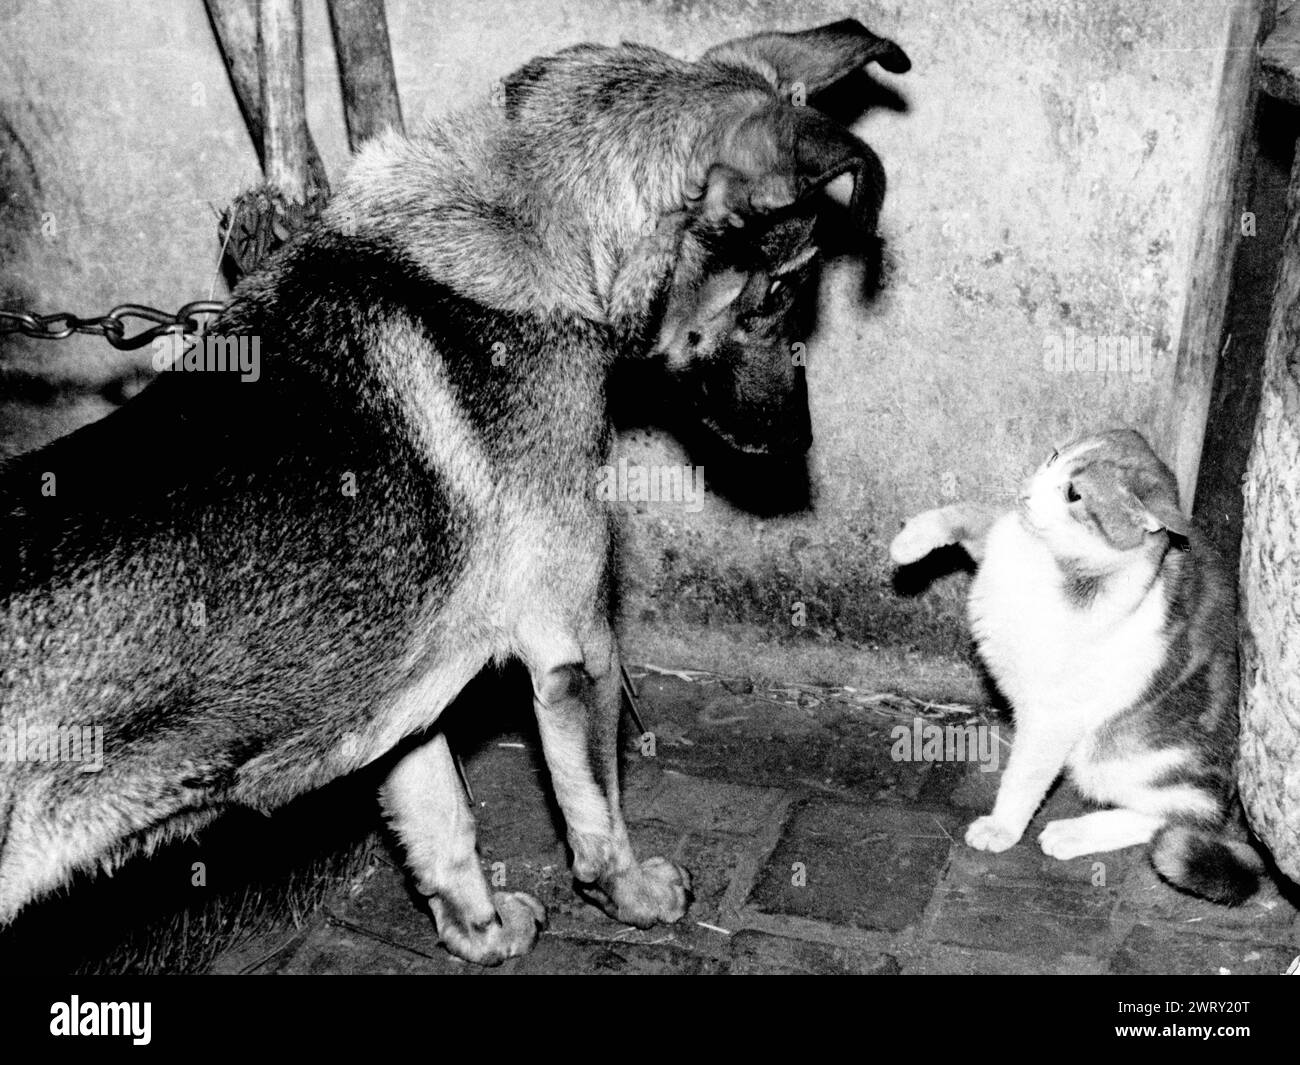 1947: Londra, Regno Unito: Gli animali domestici molto diversi sono una grande famiglia felice. Il gatto e il cane, riunitevi. (Immagine di credito: © Keystone Press Agency/ZUMA Press Wire). SOLO PER USO EDITORIALE! Non per USO commerciale! Foto Stock